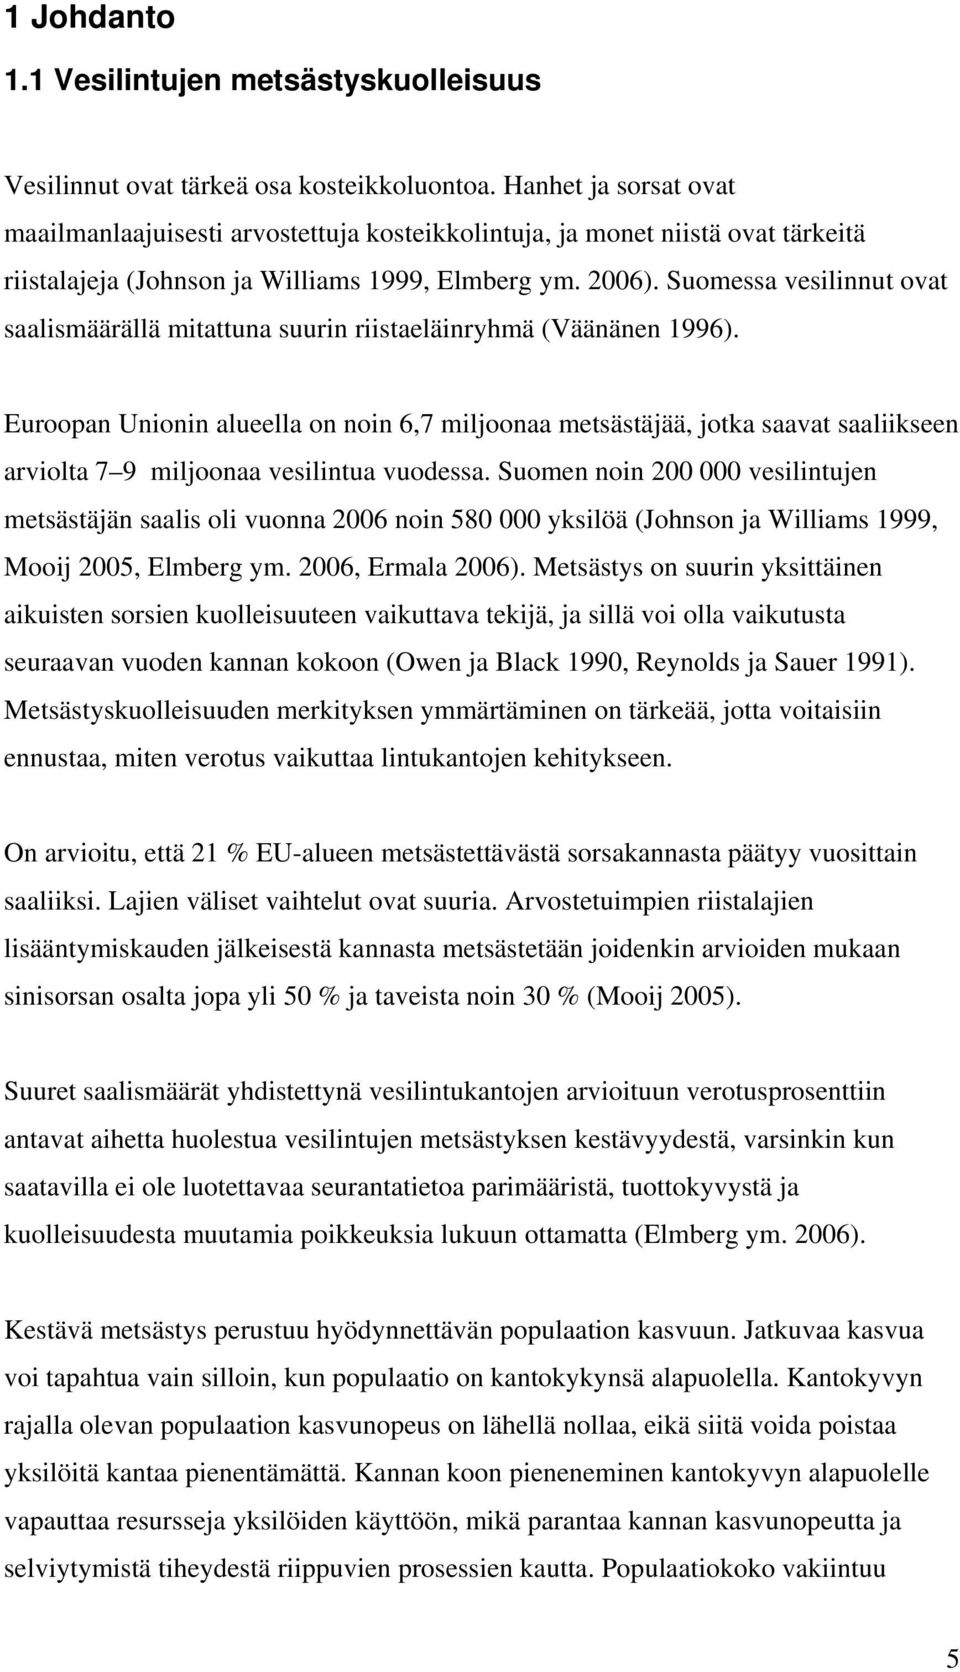 Suomessa vesilinnut ovat saalismäärällä mitattuna suurin riistaeläinryhmä (Väänänen 1996).